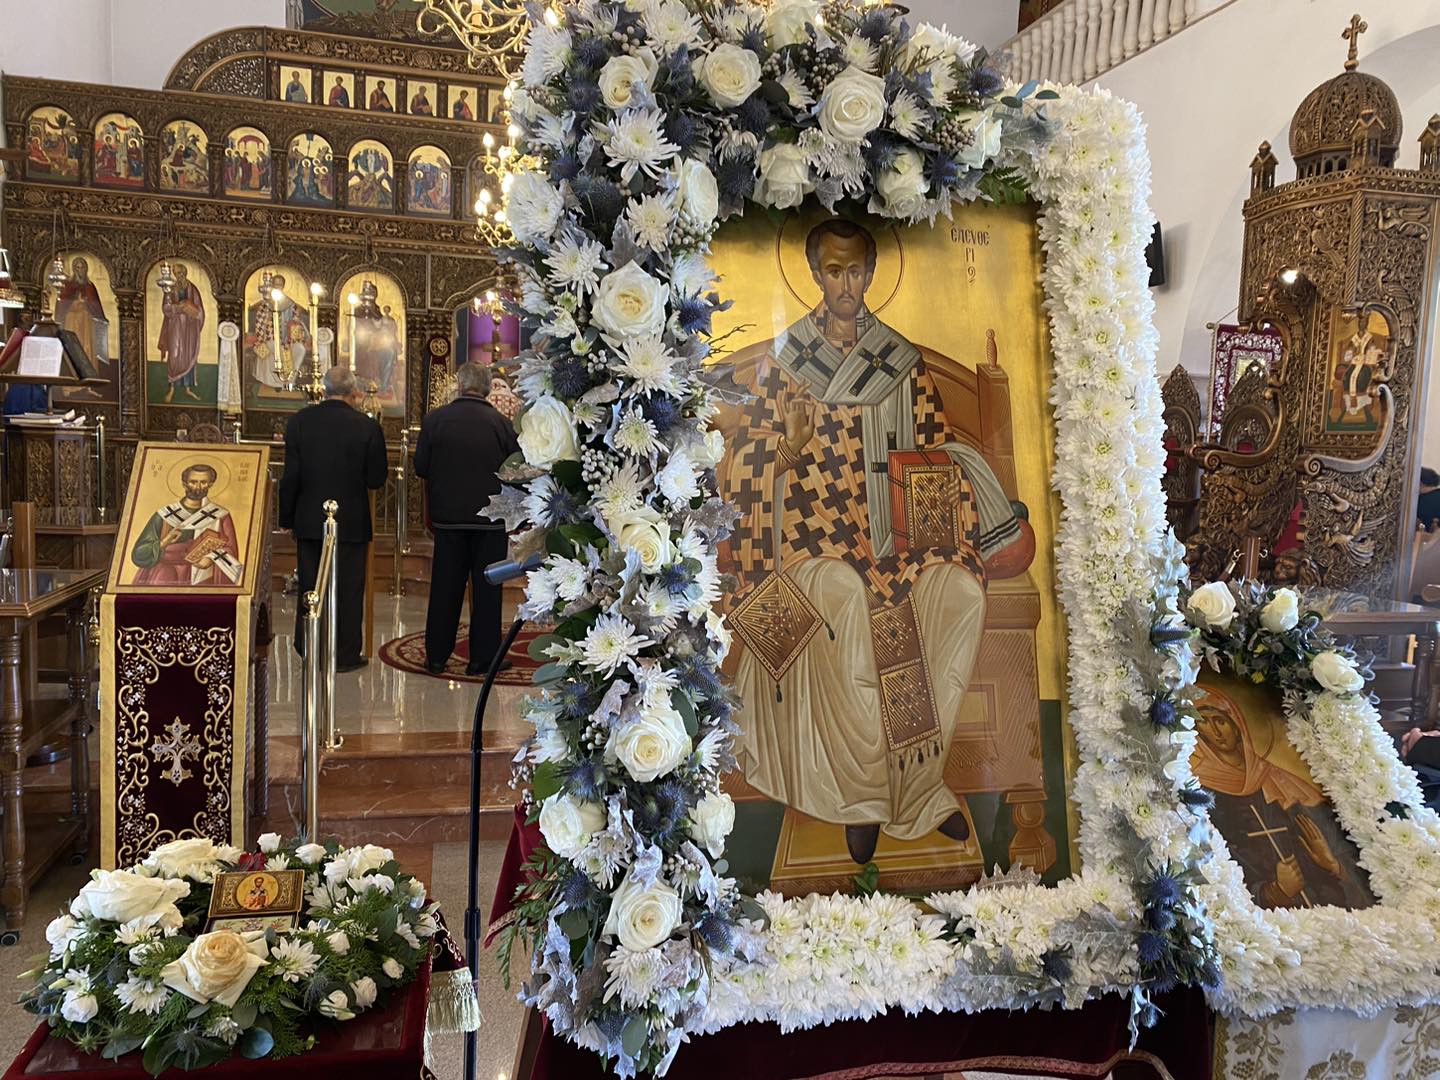 Σήμερα γιορτάζει ο Ιερός Ναός Αγίου Ελευθερίου στο συνοικισμό Τσιακκιλερού στη Λάρνακα